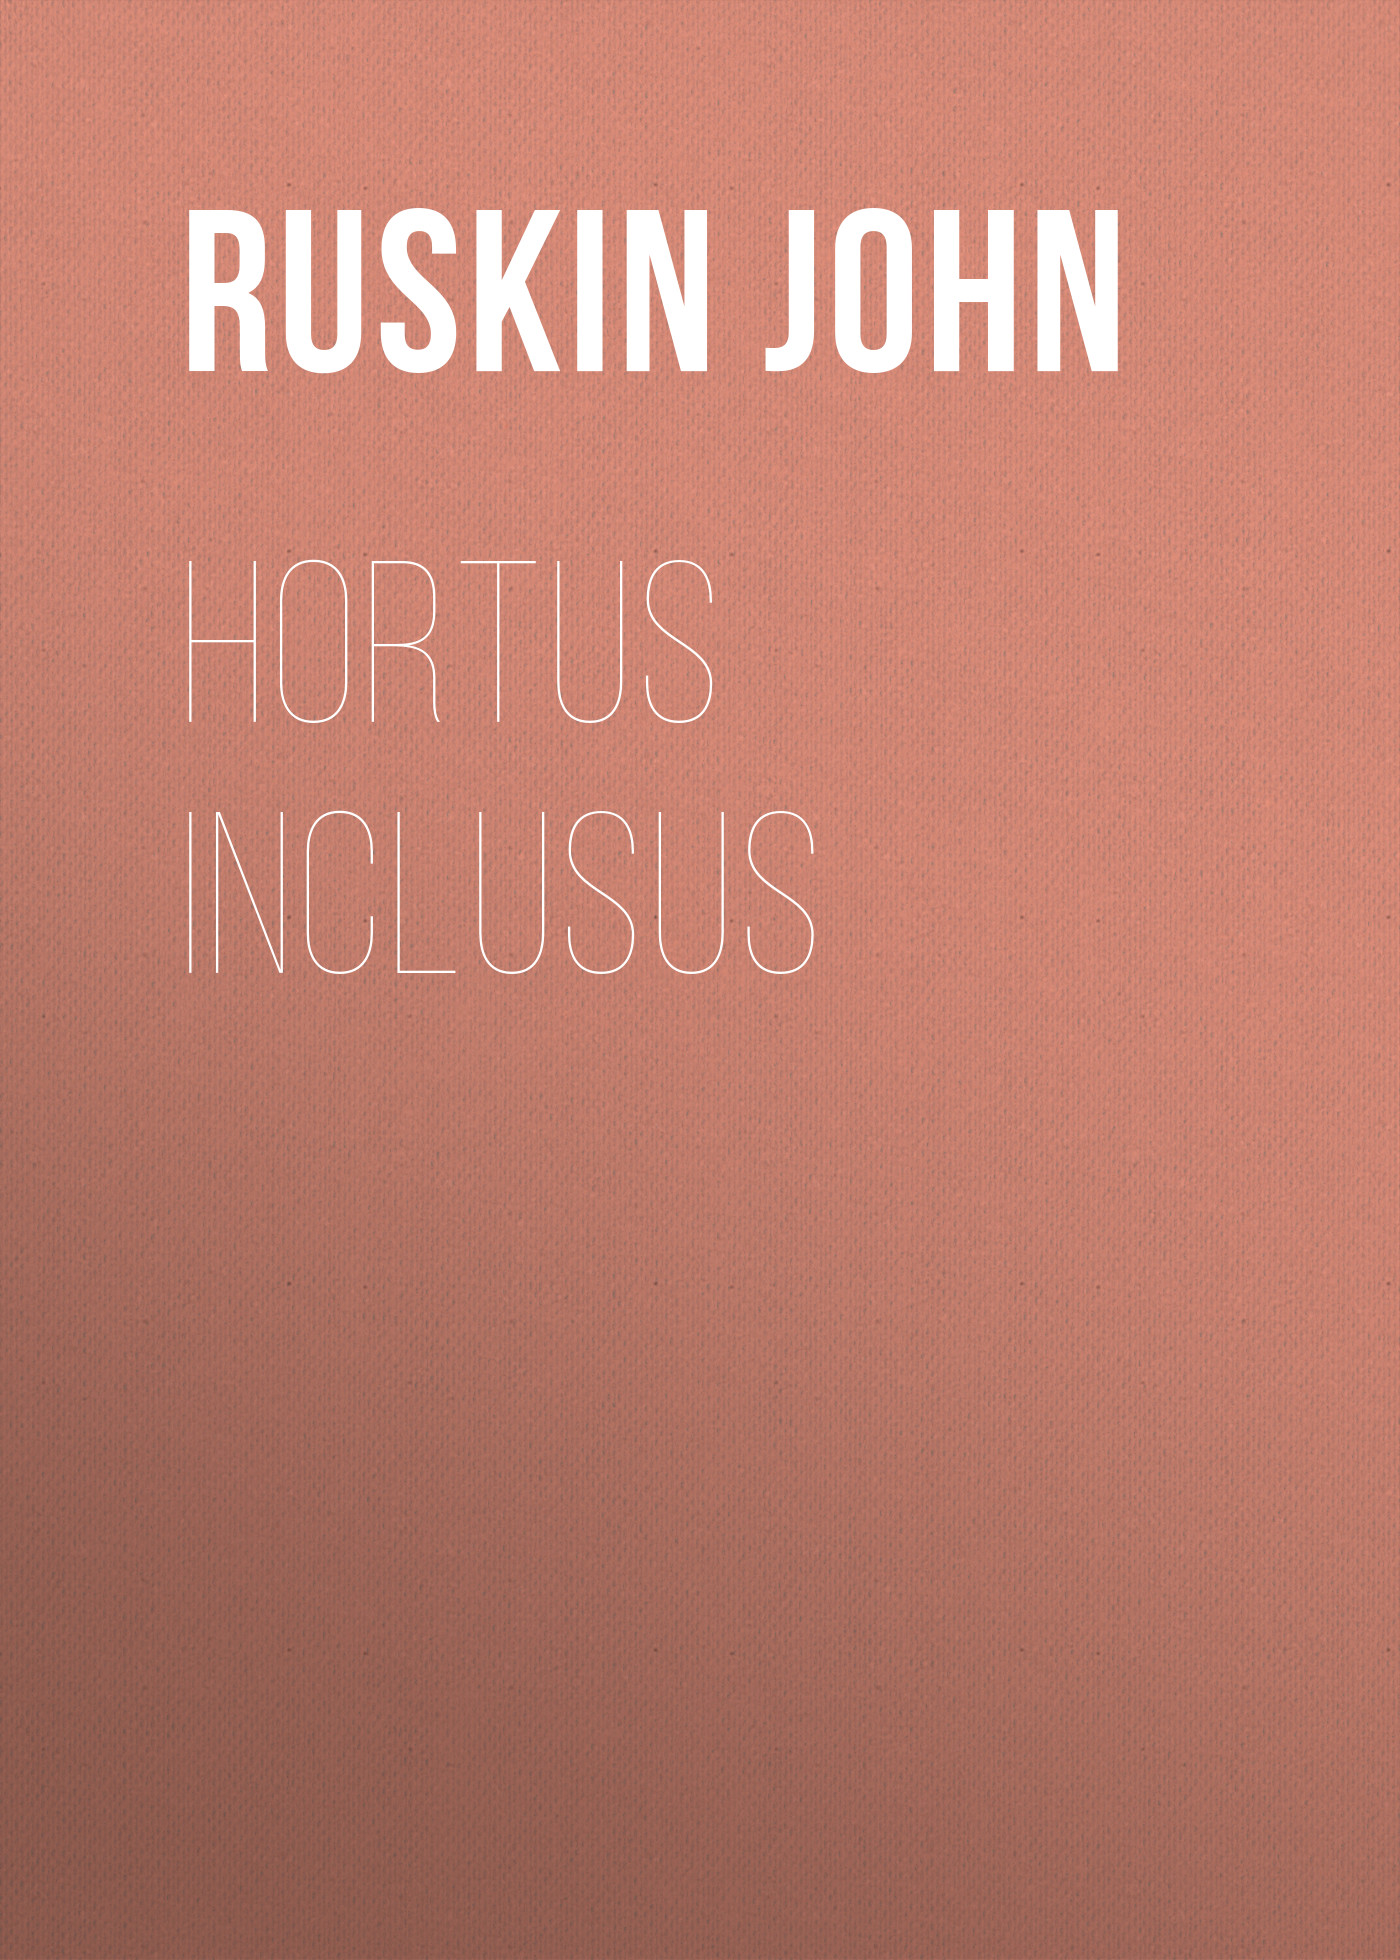 Книга Hortus Inclusus из серии , созданная John Ruskin, может относится к жанру Биографии и Мемуары, Литература 19 века, Зарубежная старинная литература. Стоимость электронной книги Hortus Inclusus с идентификатором 34842310 составляет 0 руб.